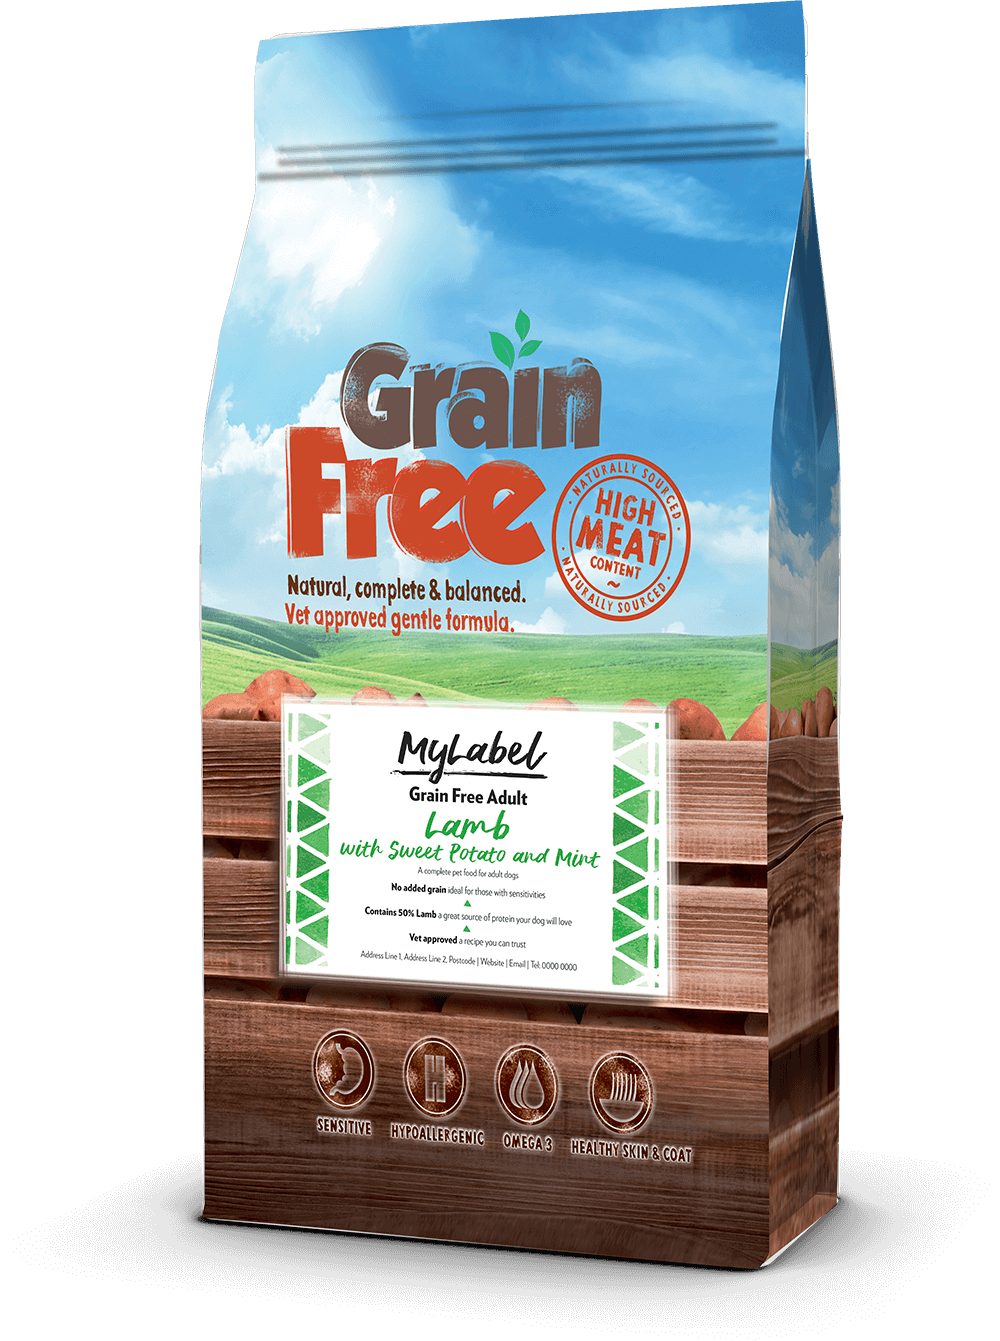 그레인 프리(Grain Free) 반려동물 사료 제품군에는 고양이와 개 모두에게 완벽하게 맞춰진 최상급 신선하고 영양가 있고 소화가 잘되는 동물성 단백질 공급원이 포함되어 있습니다.